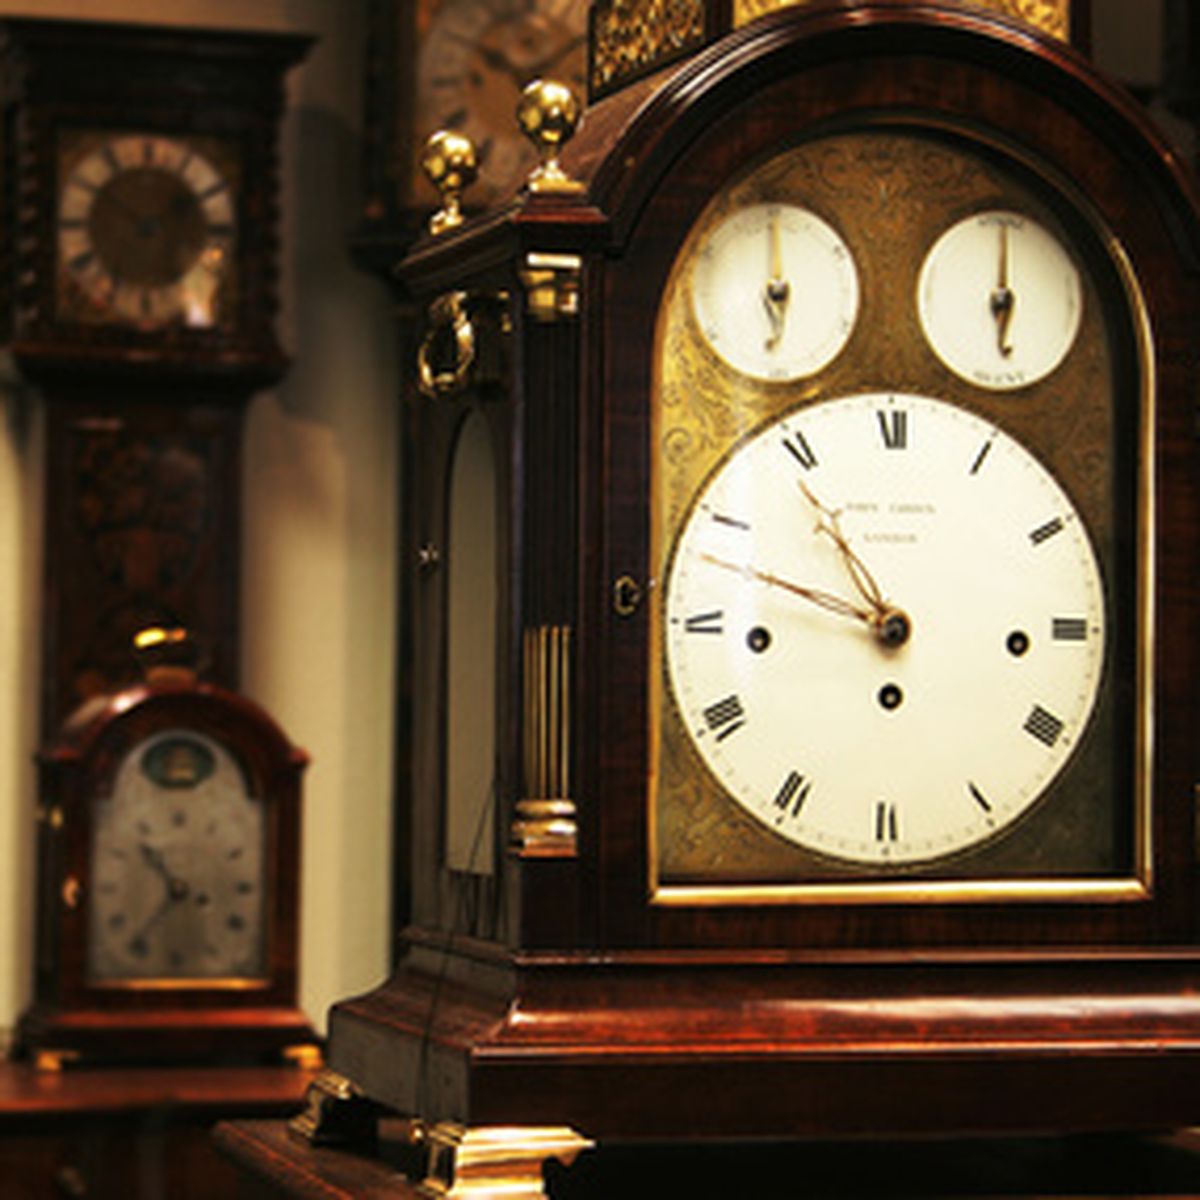 Carriage Clocks and the British Antique Spirit